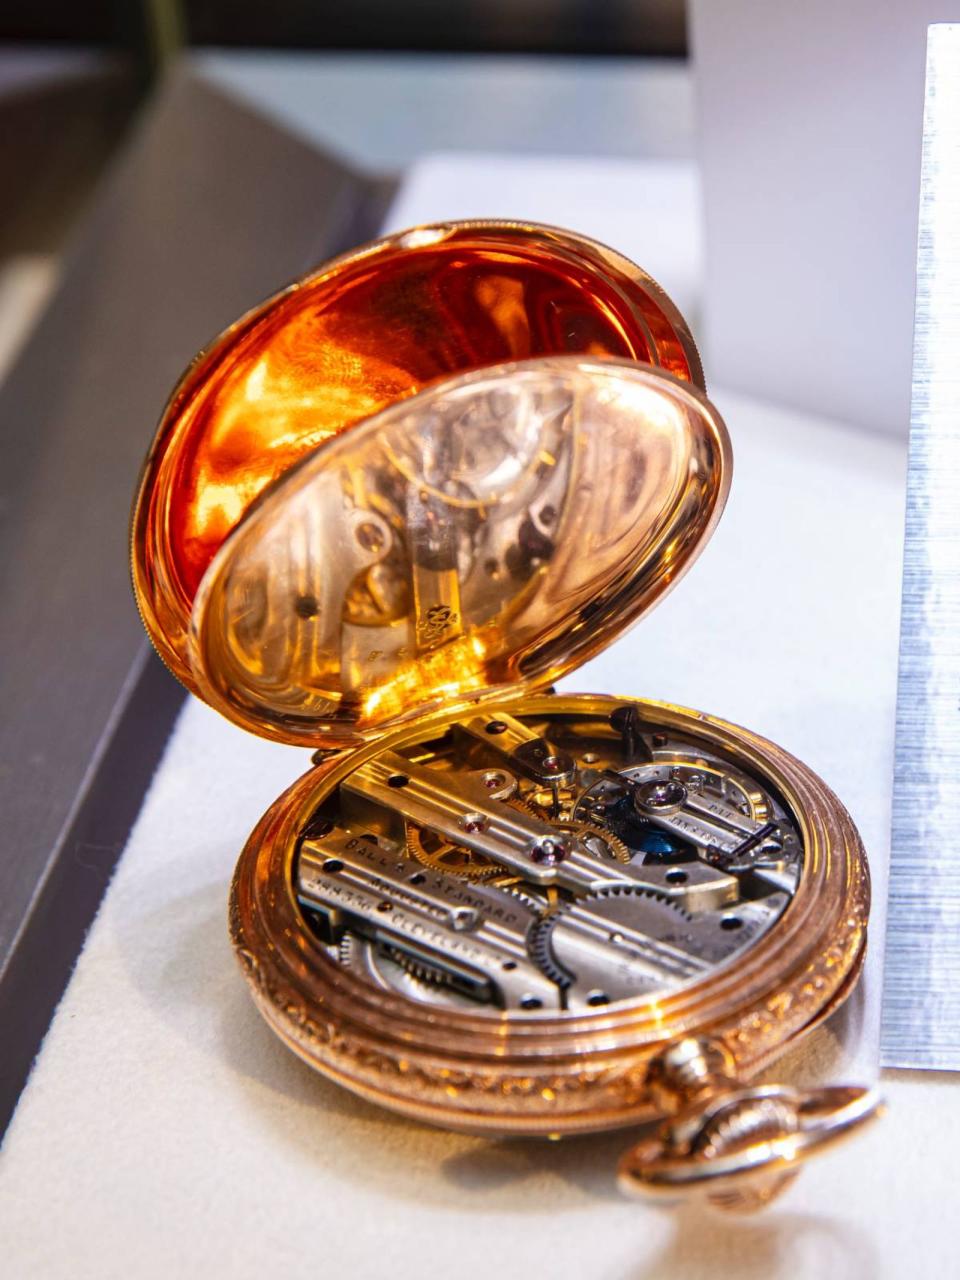 BALL日前在台灣舉行古董錶展，展出多款百年前的古董懷錶與腕錶。其中著名的No 288336懷錶（下圖）採用江詩丹頓機芯。